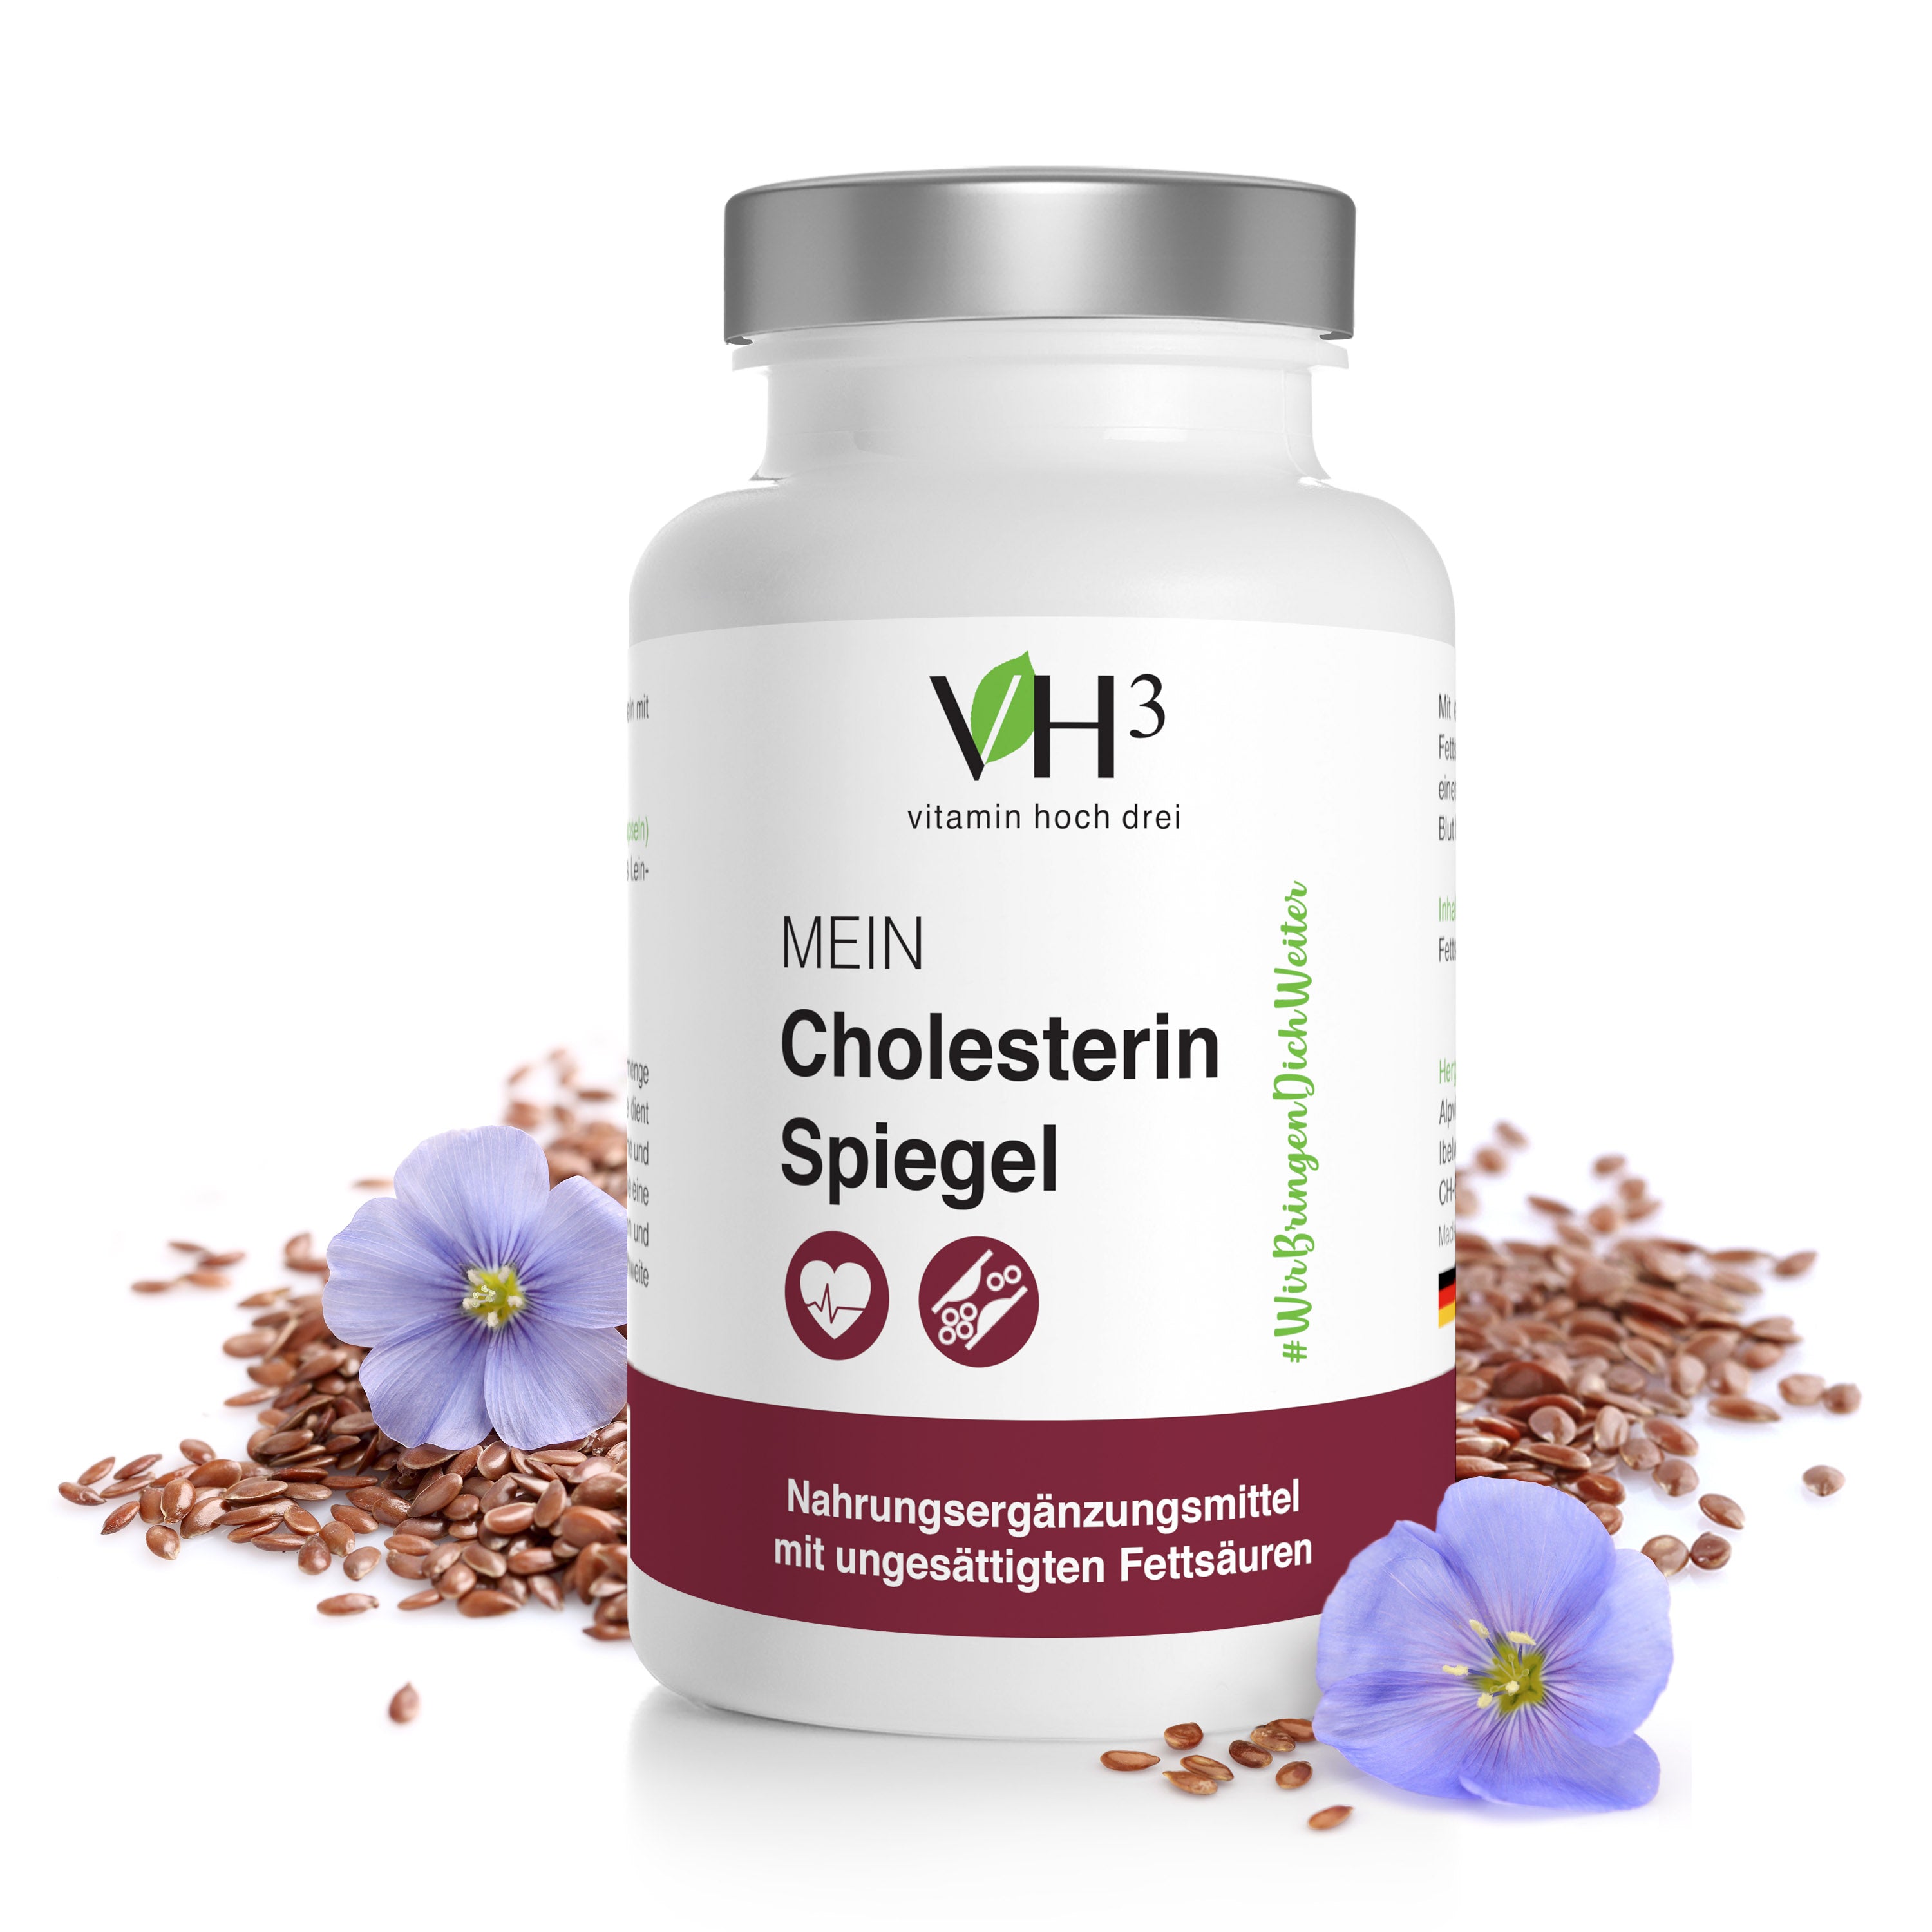 Zu sehen ist das Produkt VH3 Mein Cholesterinspiegel und die Inhaltsstoffe wie Leinsamen liegen in natürlicher Form um die Dose herum